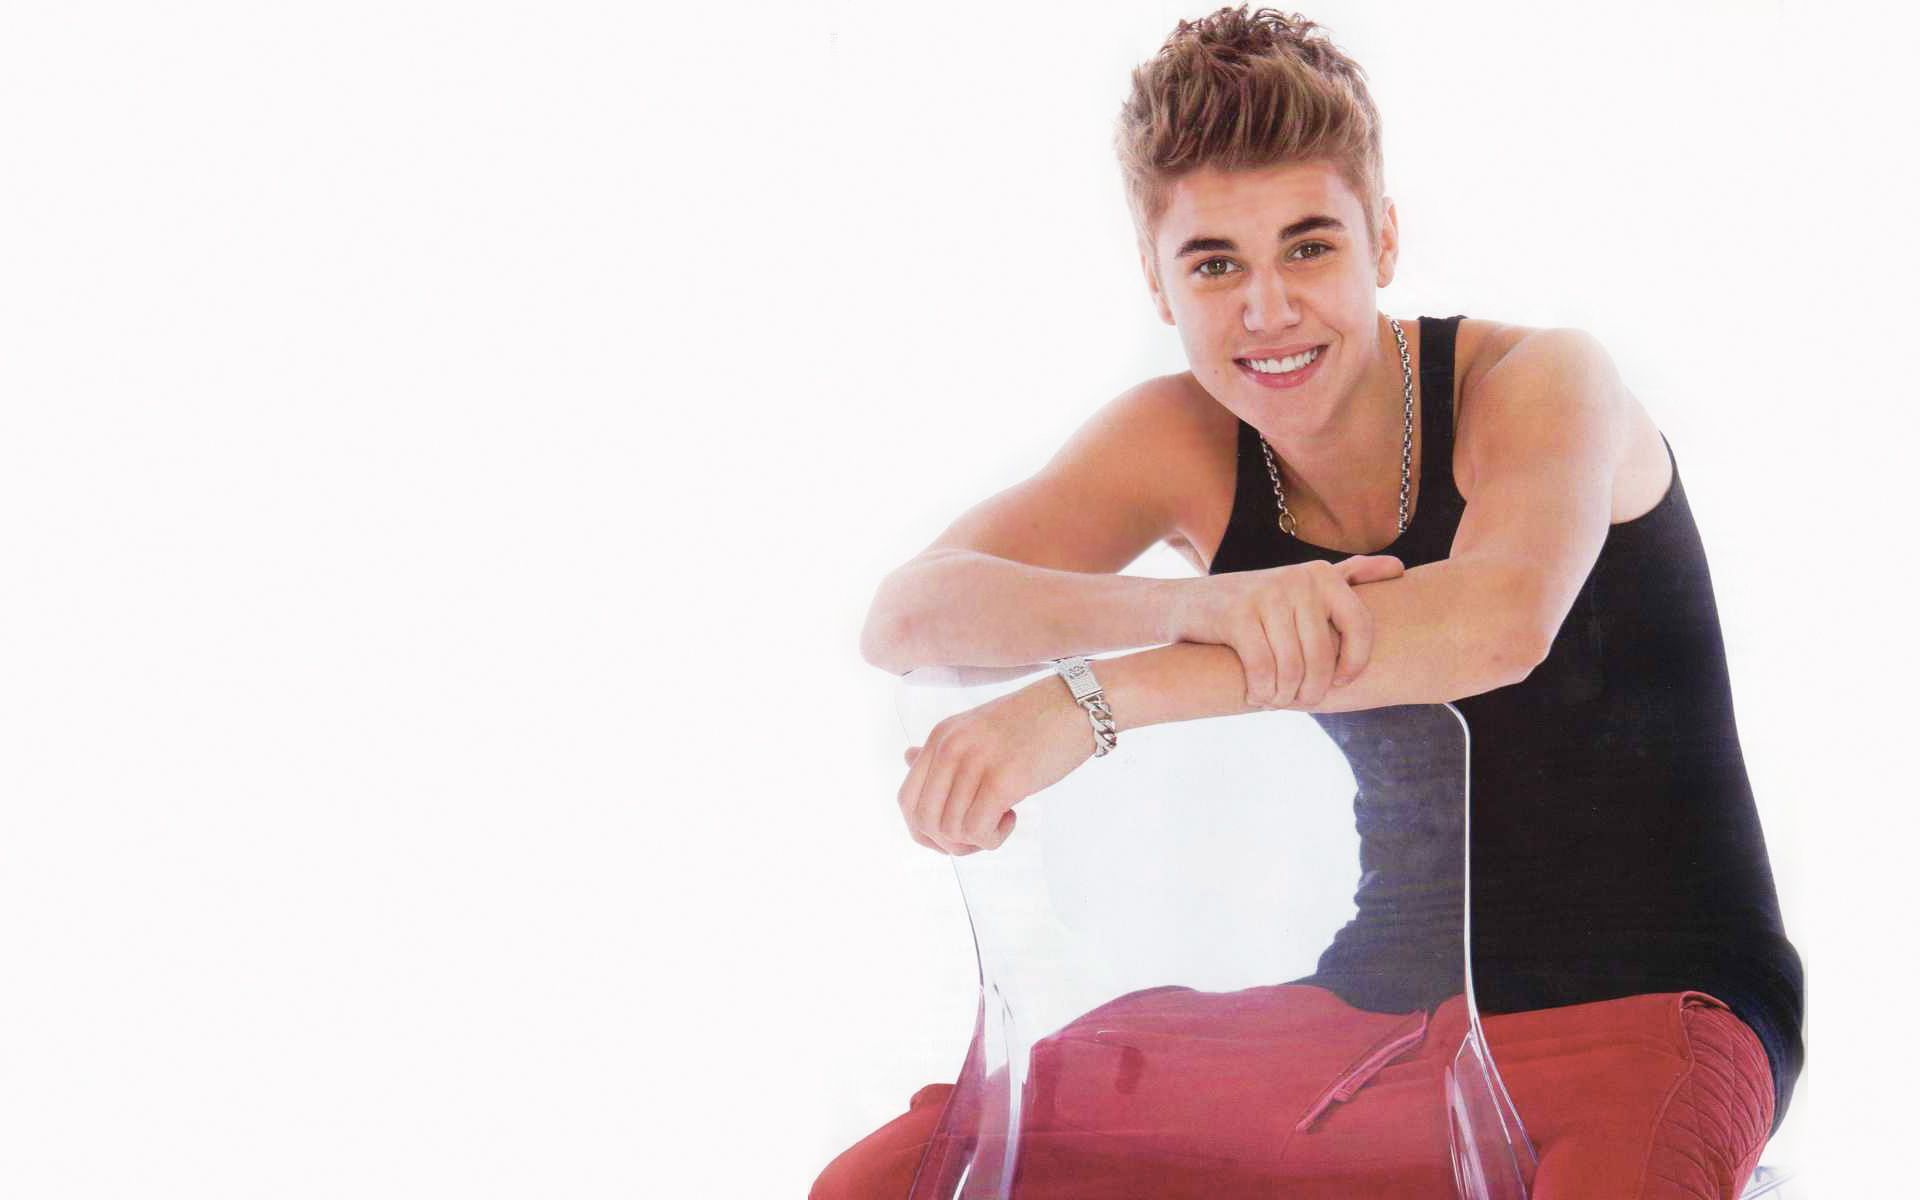 Justin-Bieber-Wallpaper-Photos-2014.jpg